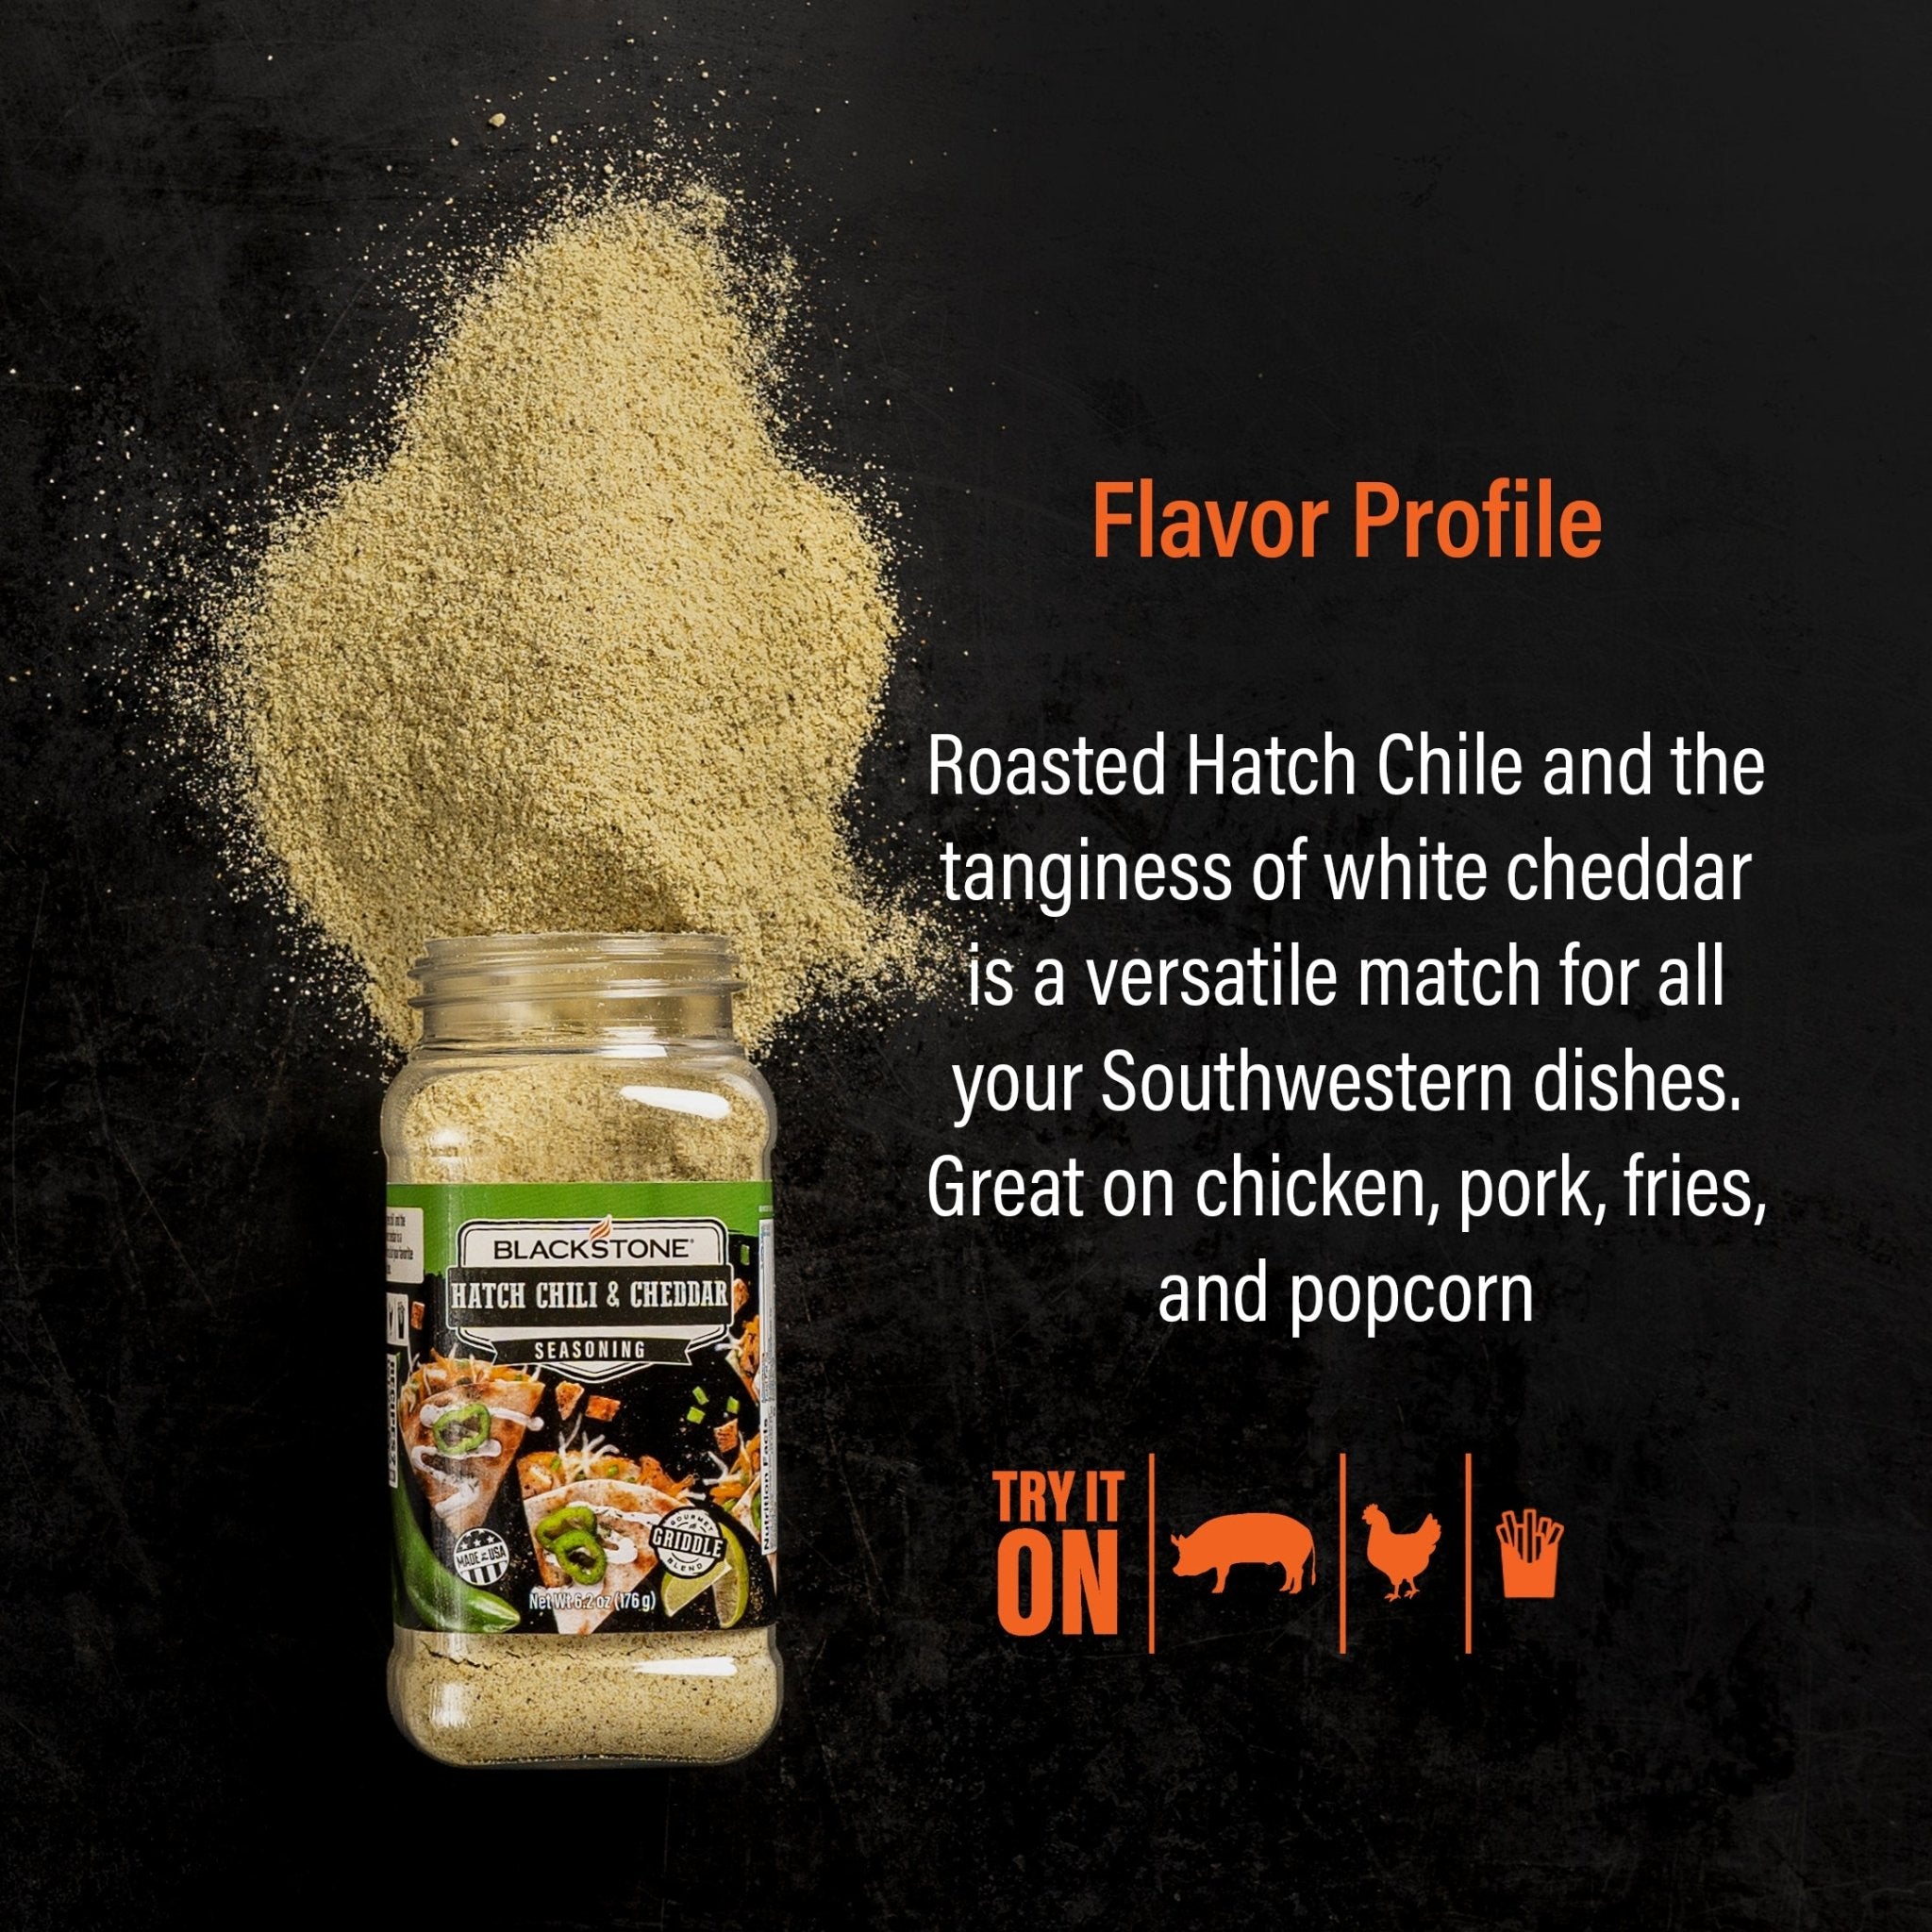 Hatch Chili & Cheddar - Blackstone Products